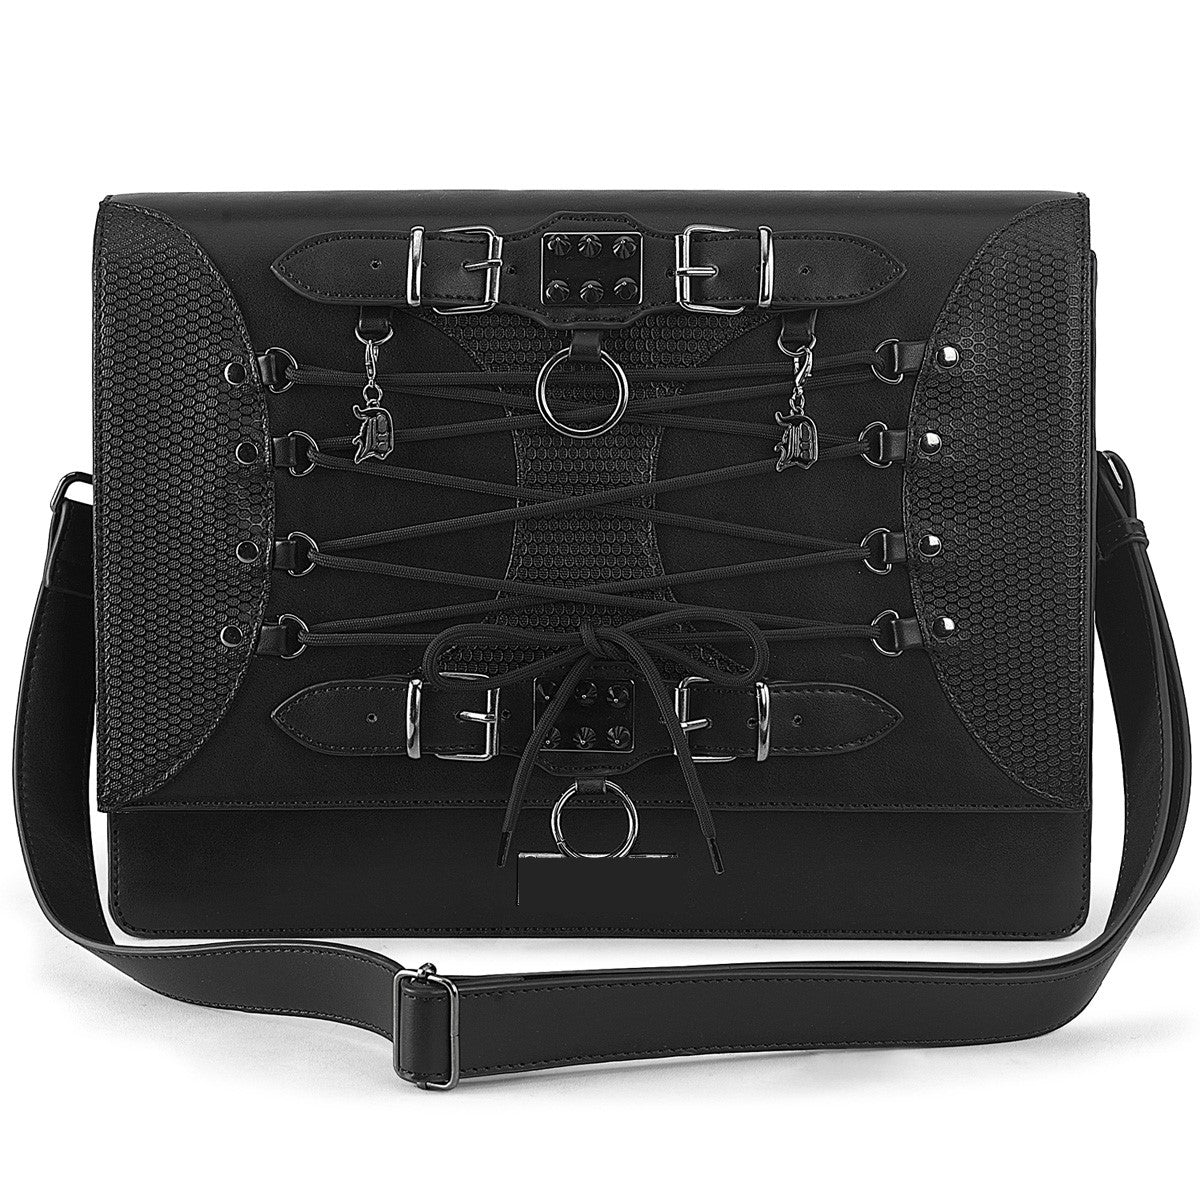 DemoniaCult HB-661 Black Faux Leather Large Shoulder Bag